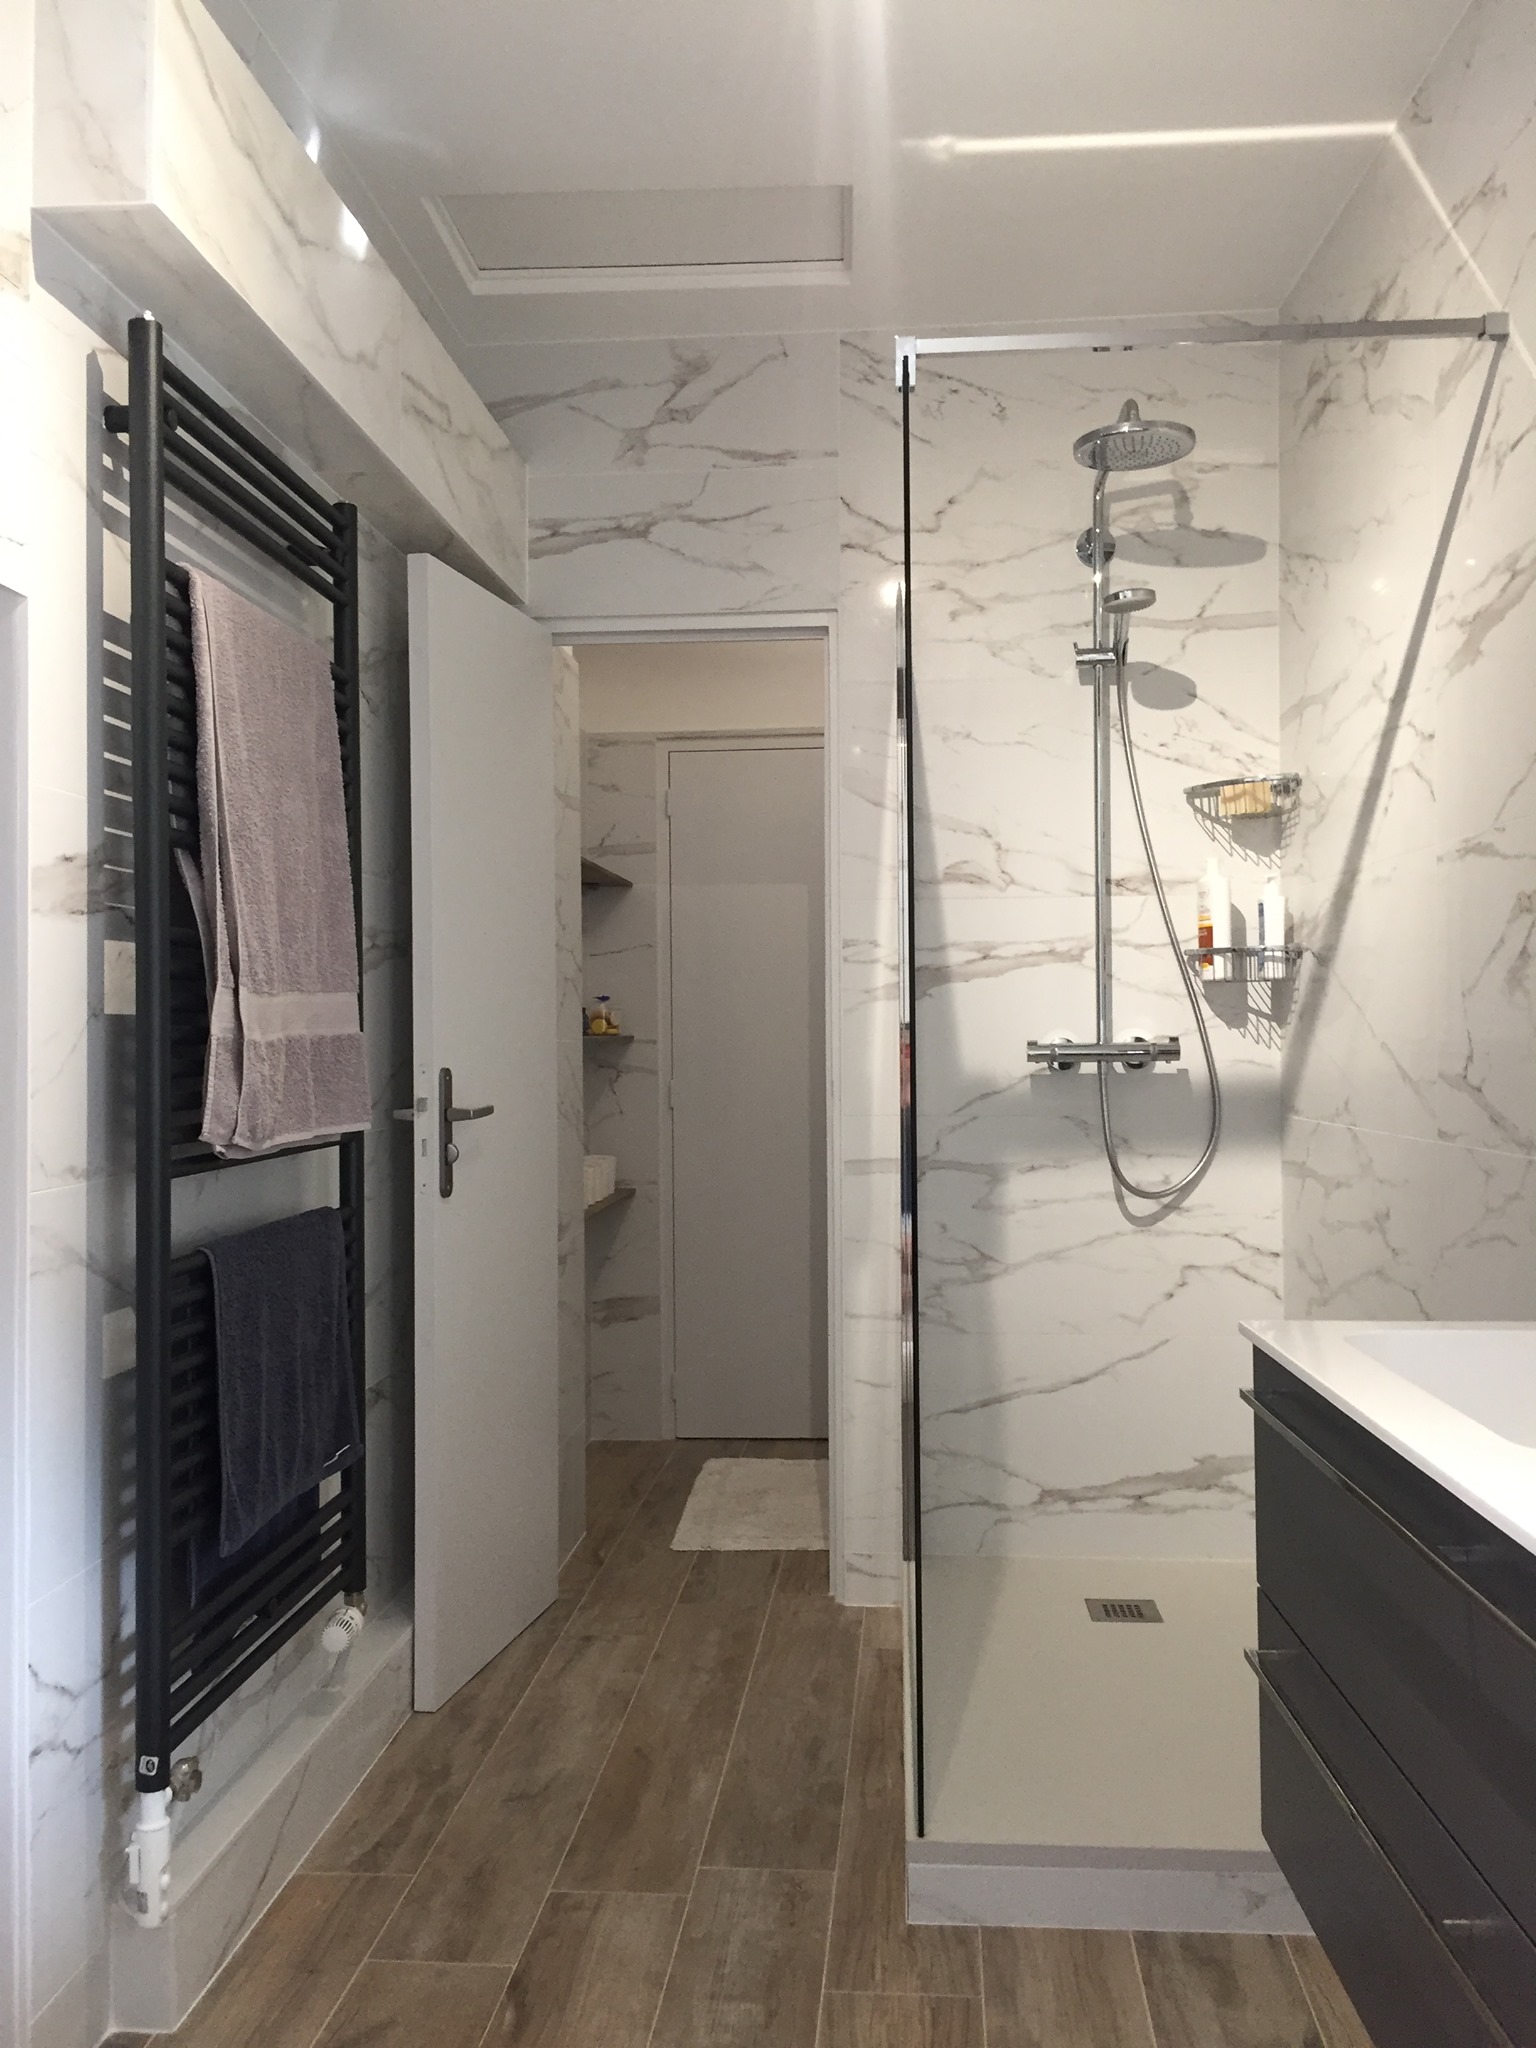 Projet rénovation salle bains contemporaine design marbre blanc Lion Service Dijon 21